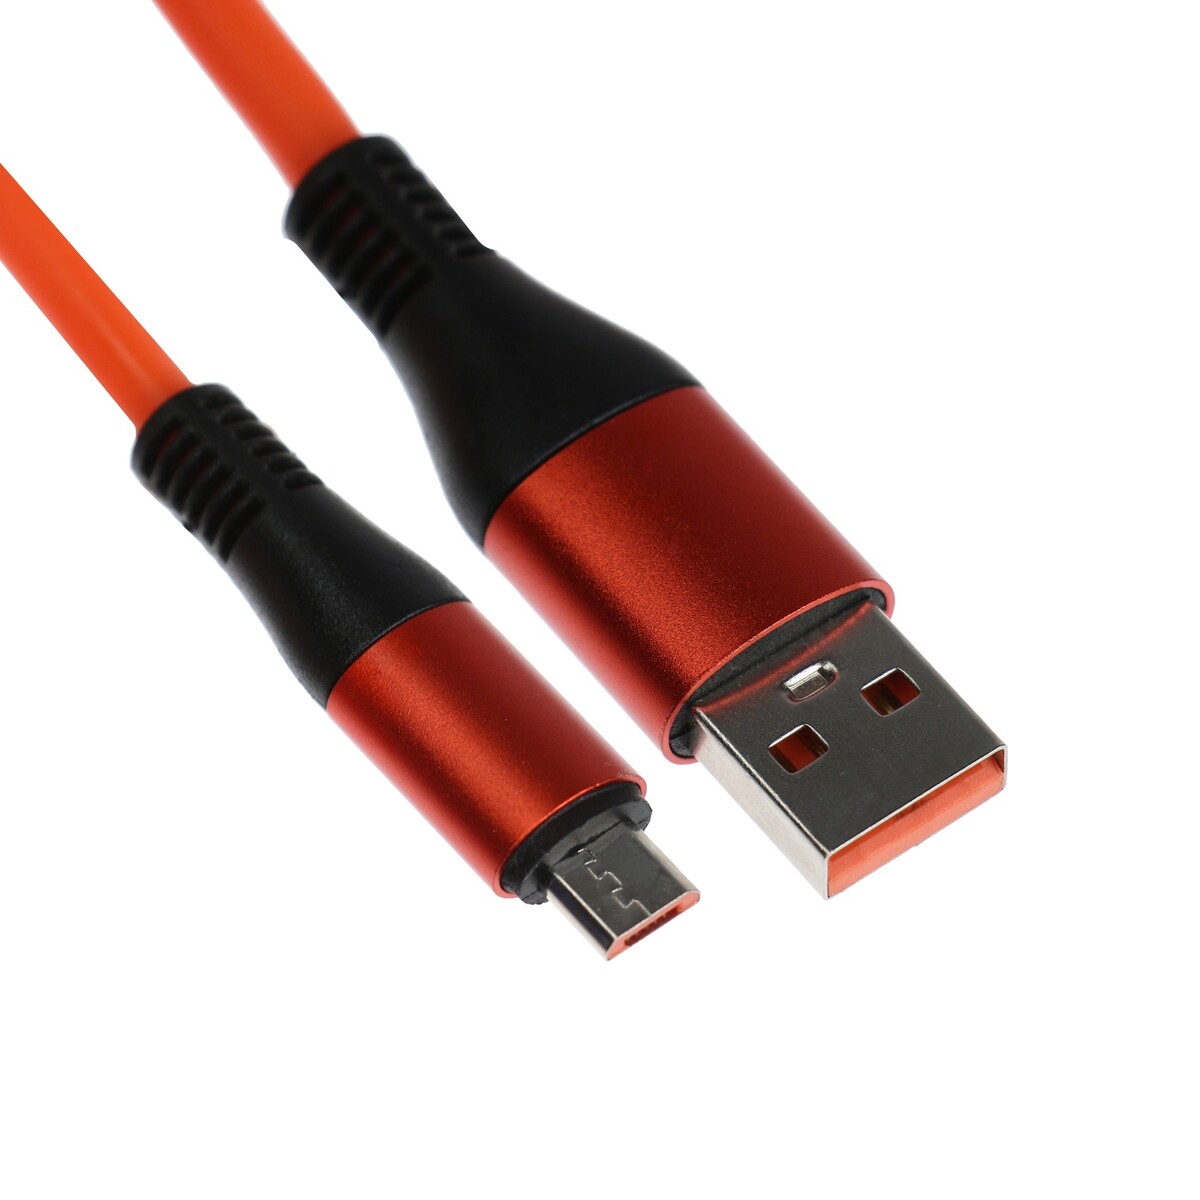 Кабель microusb - usb, 2.4 a, оплетка tpe, утолщенный, 1 метр, оранжевый кабель 2 а microusb usb прозрачный оплетка нейлон 1 м серый